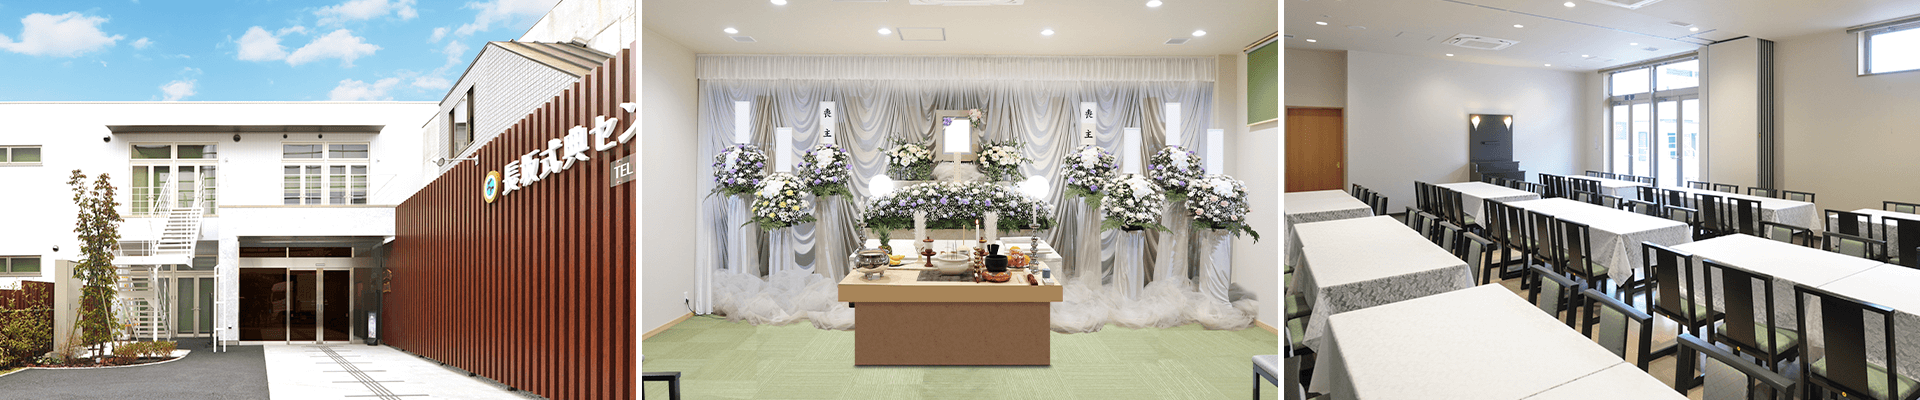 葬儀・葬式・家族葬なら16.5万円からできる長坂式典センター 東大和市の葬儀場一覧